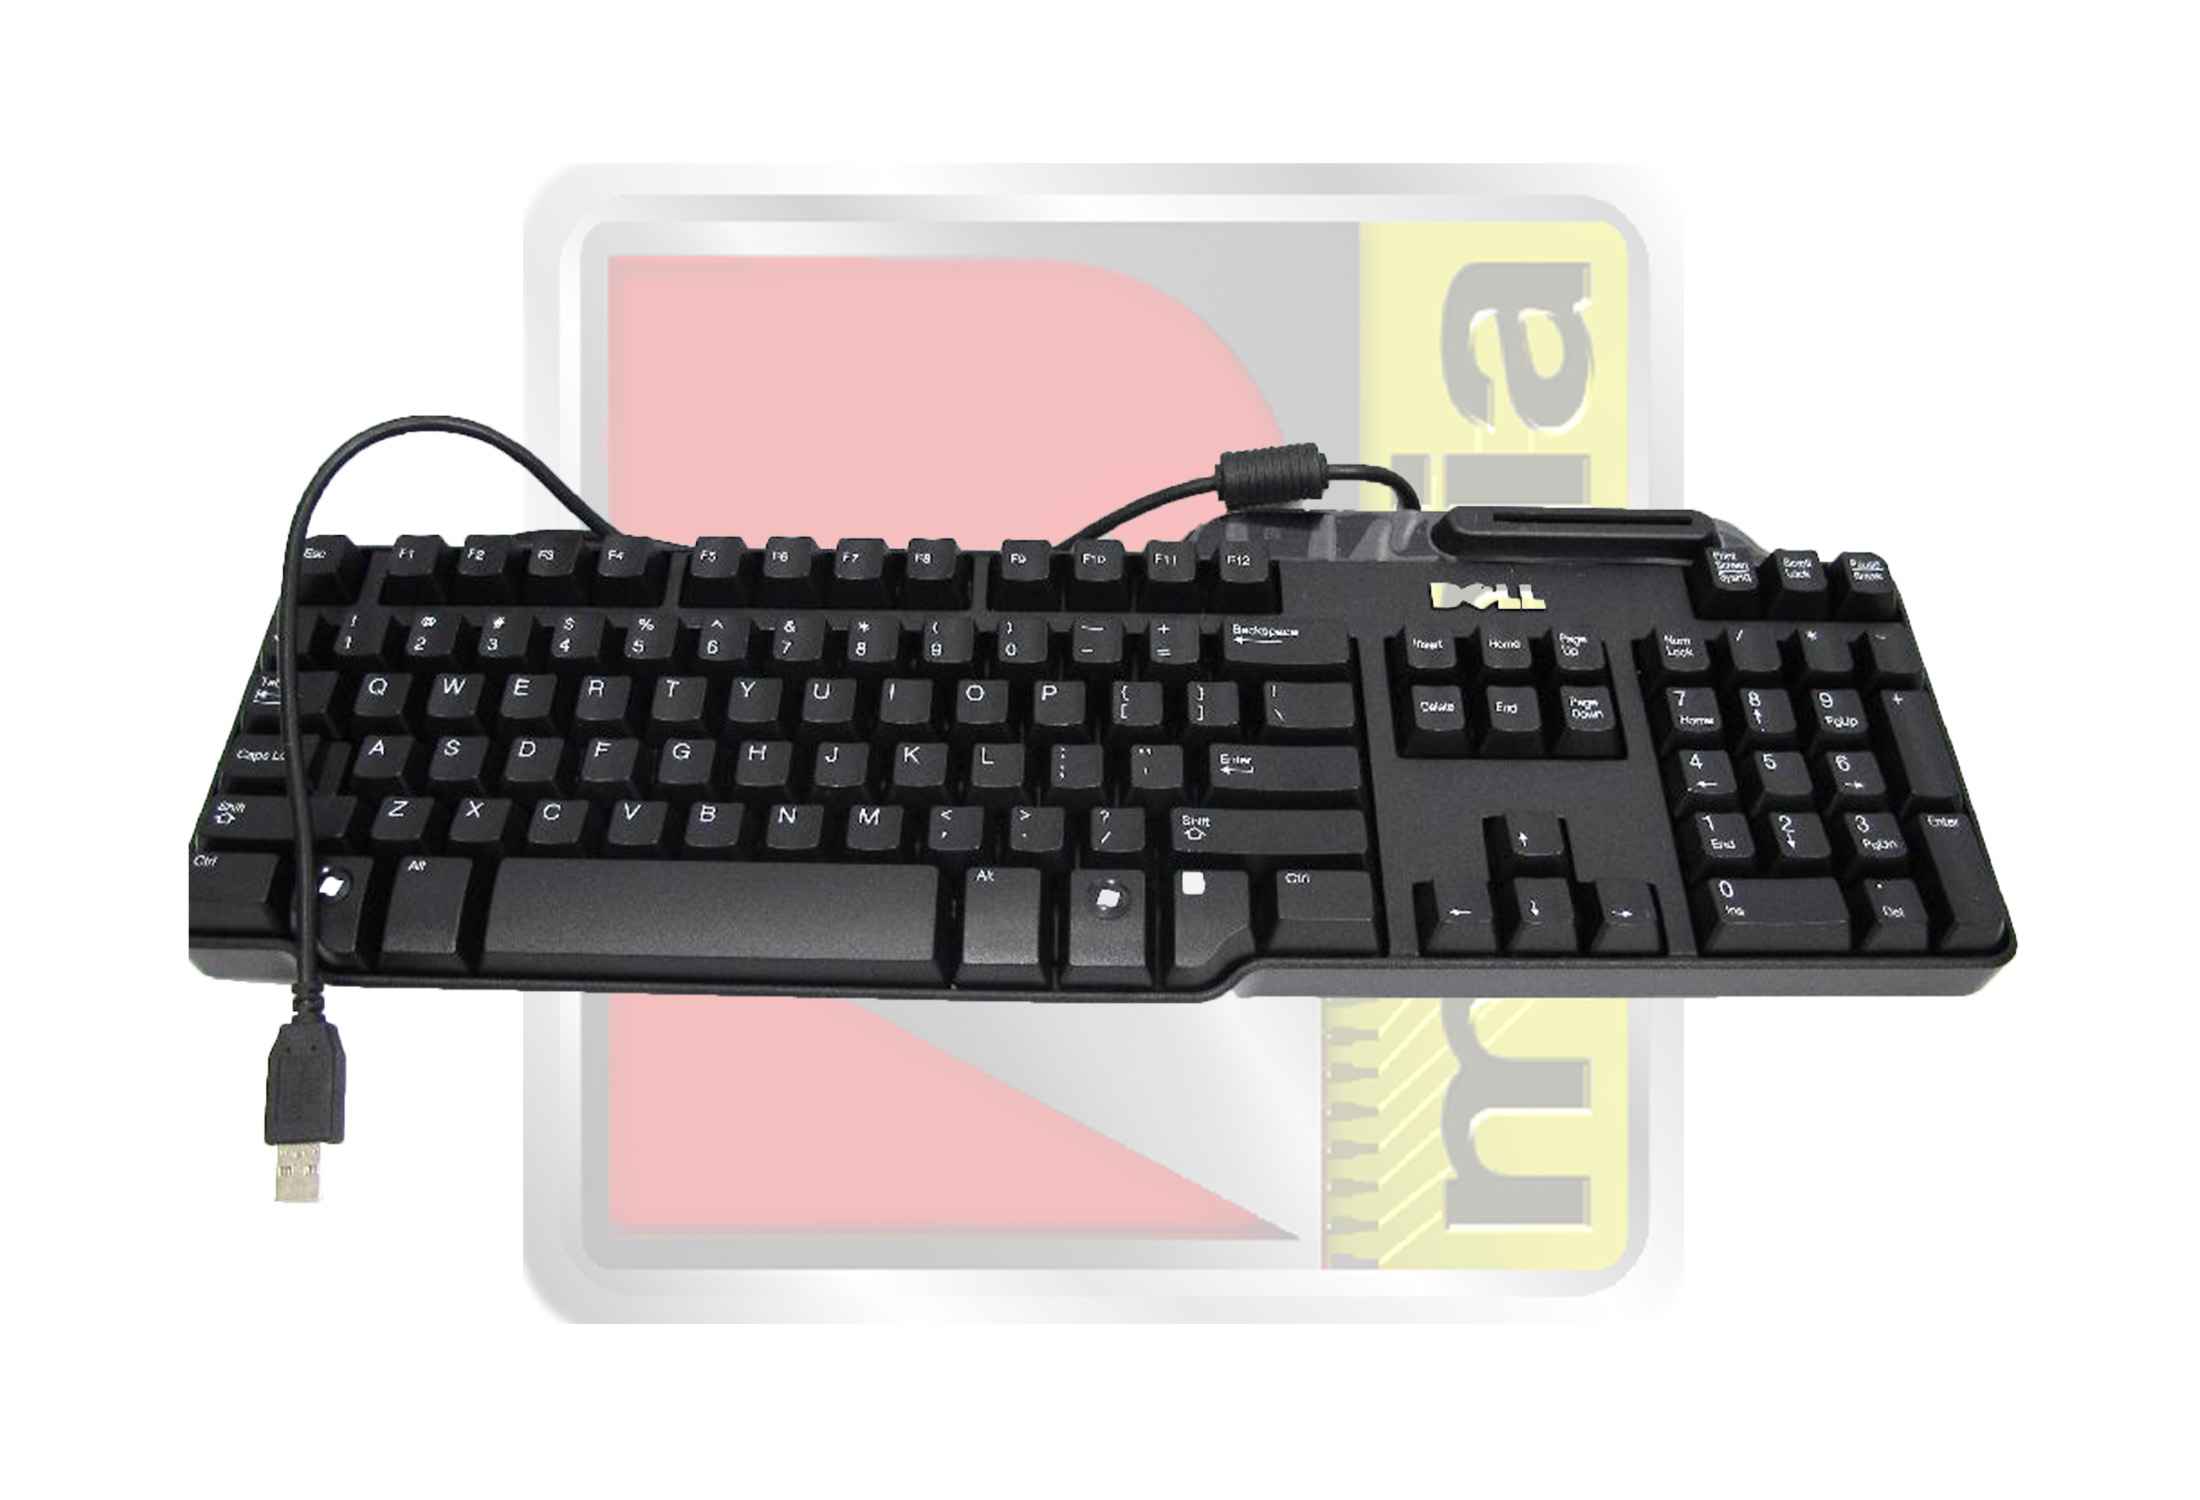 DELL SK-3205 USB SmartCard US Keyboard-ymZdJ.jpeg